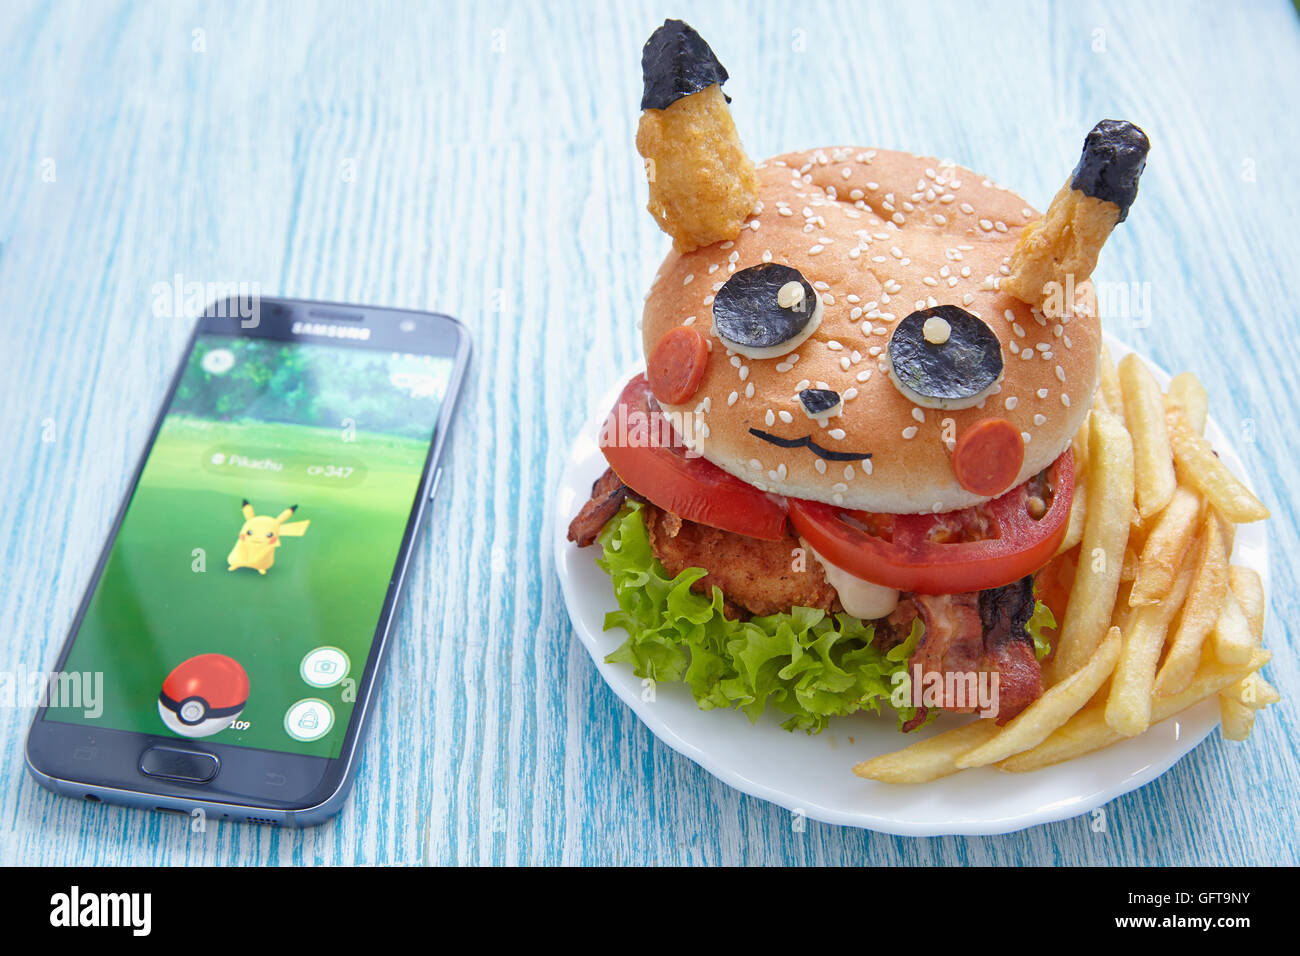 Mosca, Russia - 29 luglio 2016 Editorial immagine: Fan Art Pikachu Burger e Smartphone con Pokemon Go. Foc selettiva Foto Stock